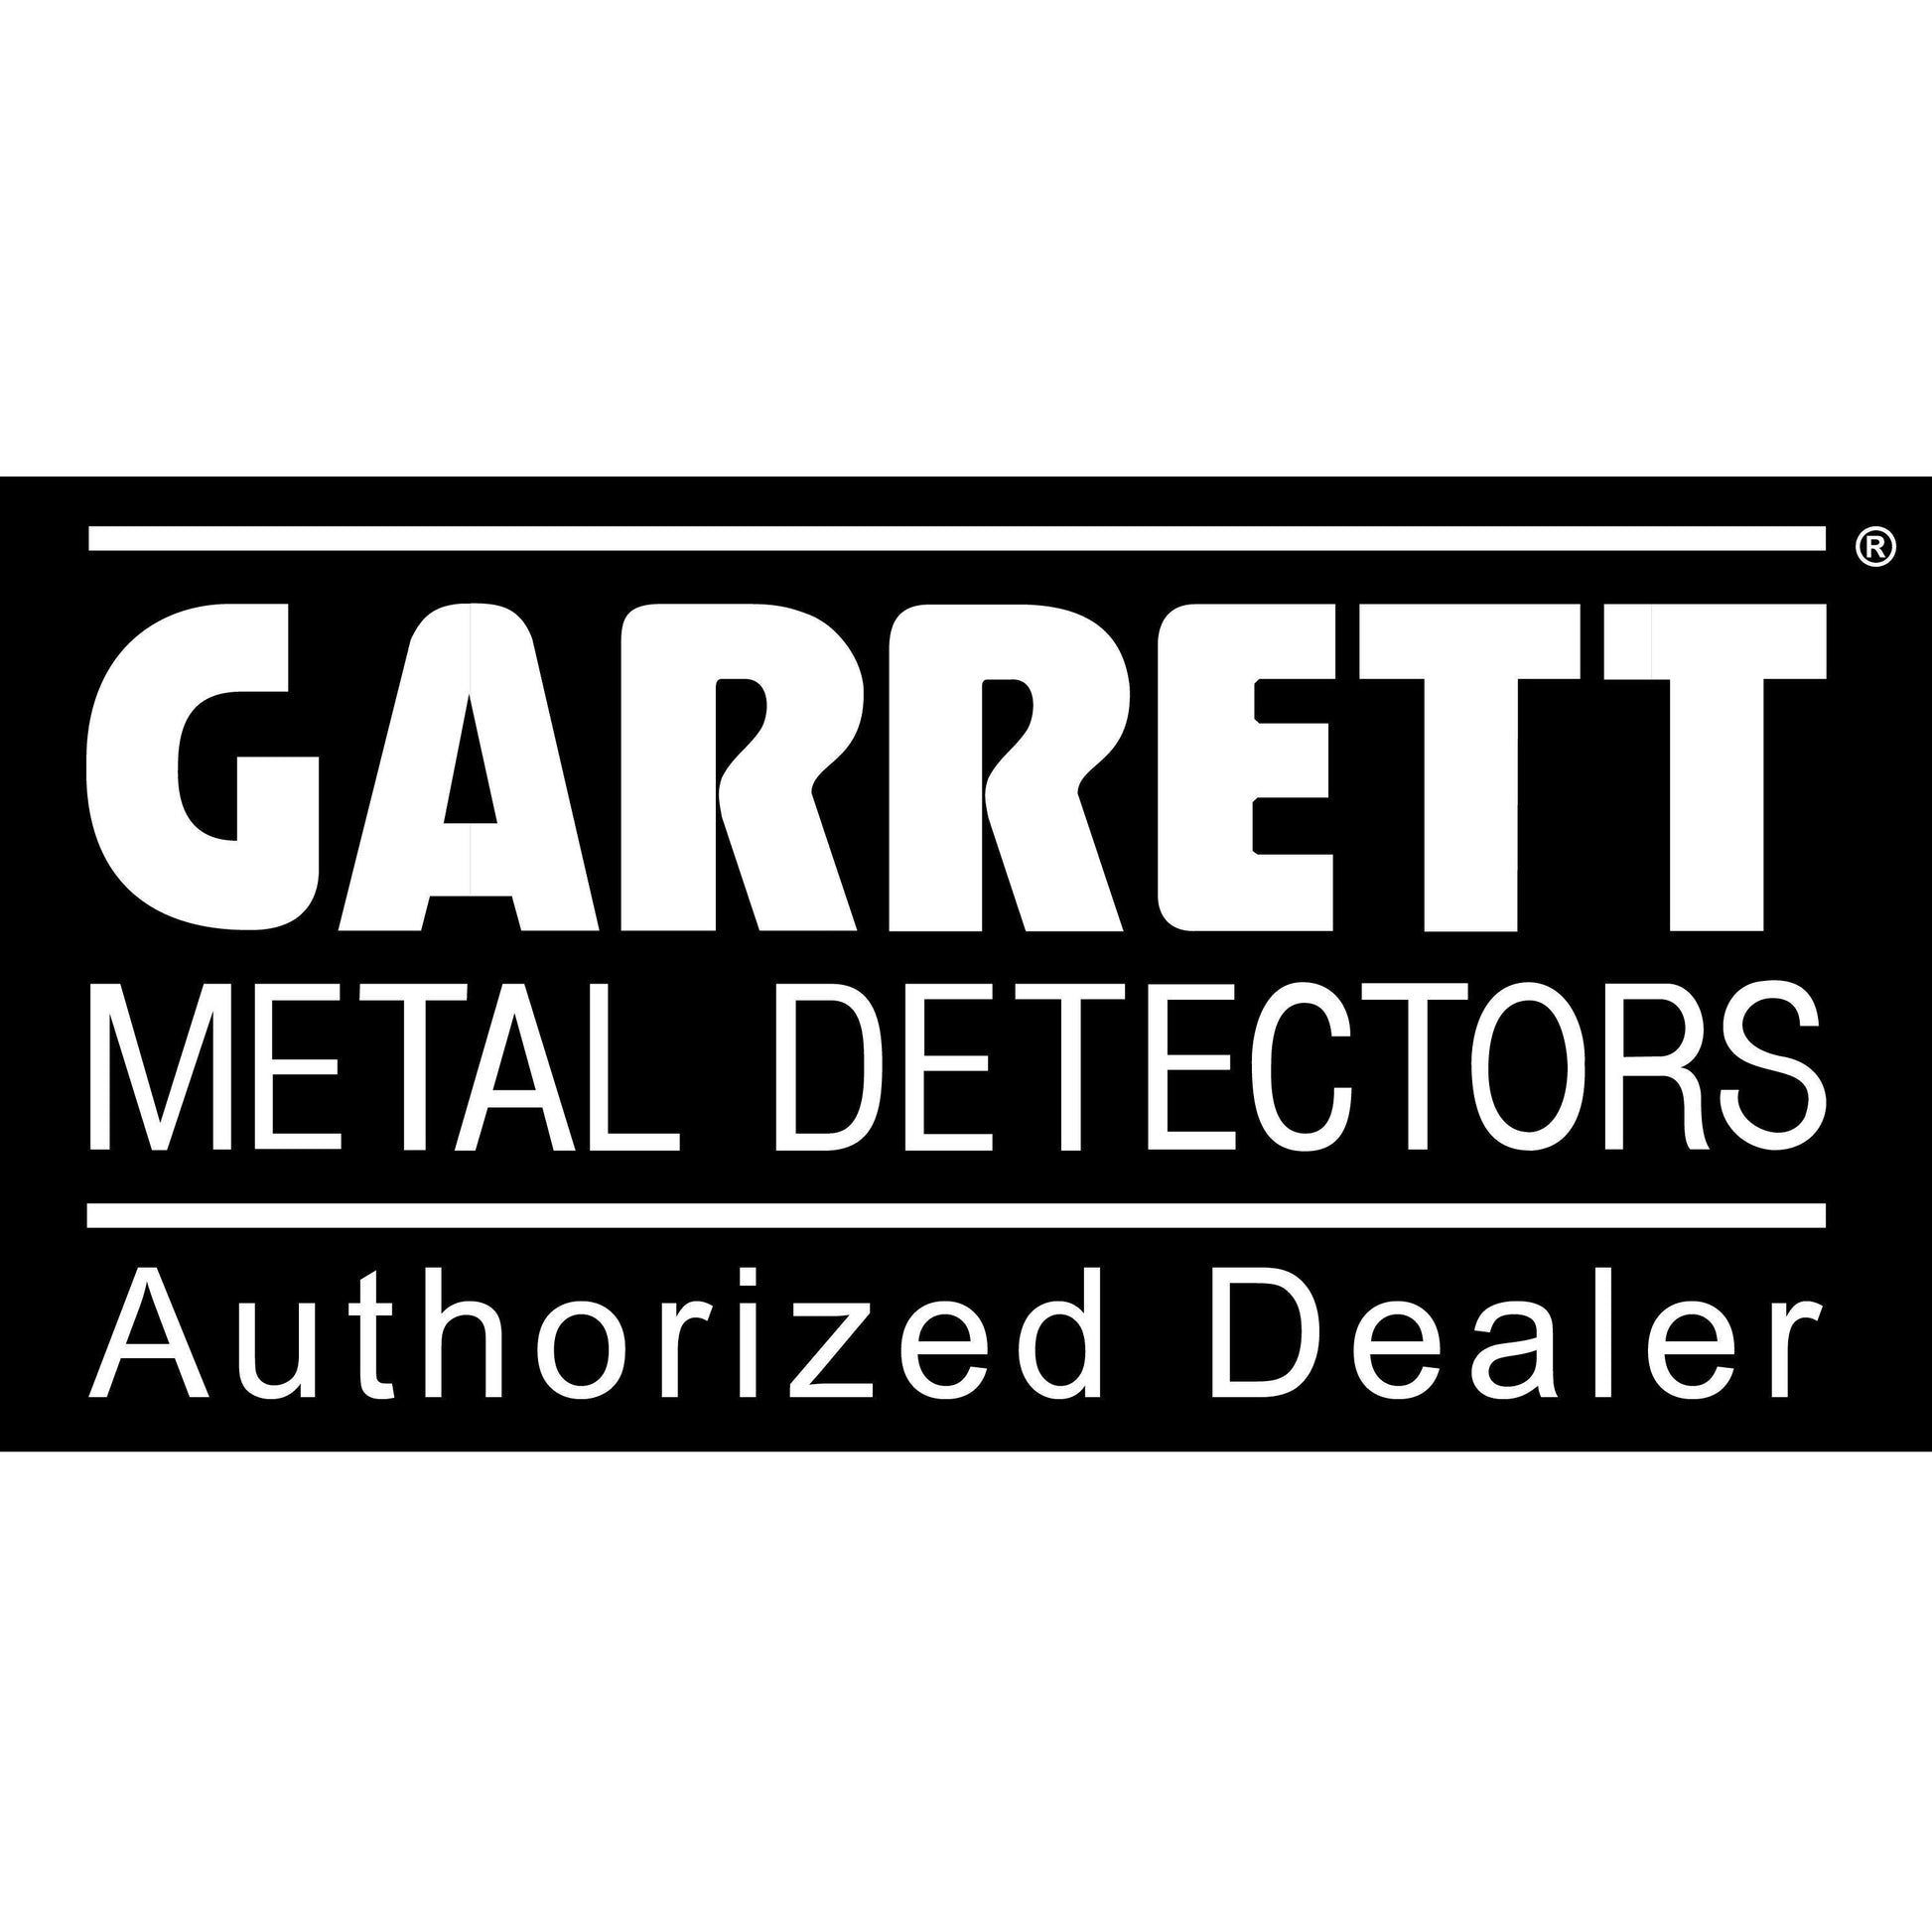 Garrett ACE 250 Metal Detector + Pouch + Gloves + Edge Digger + Treasu –  Destination Gold Detectors LLC